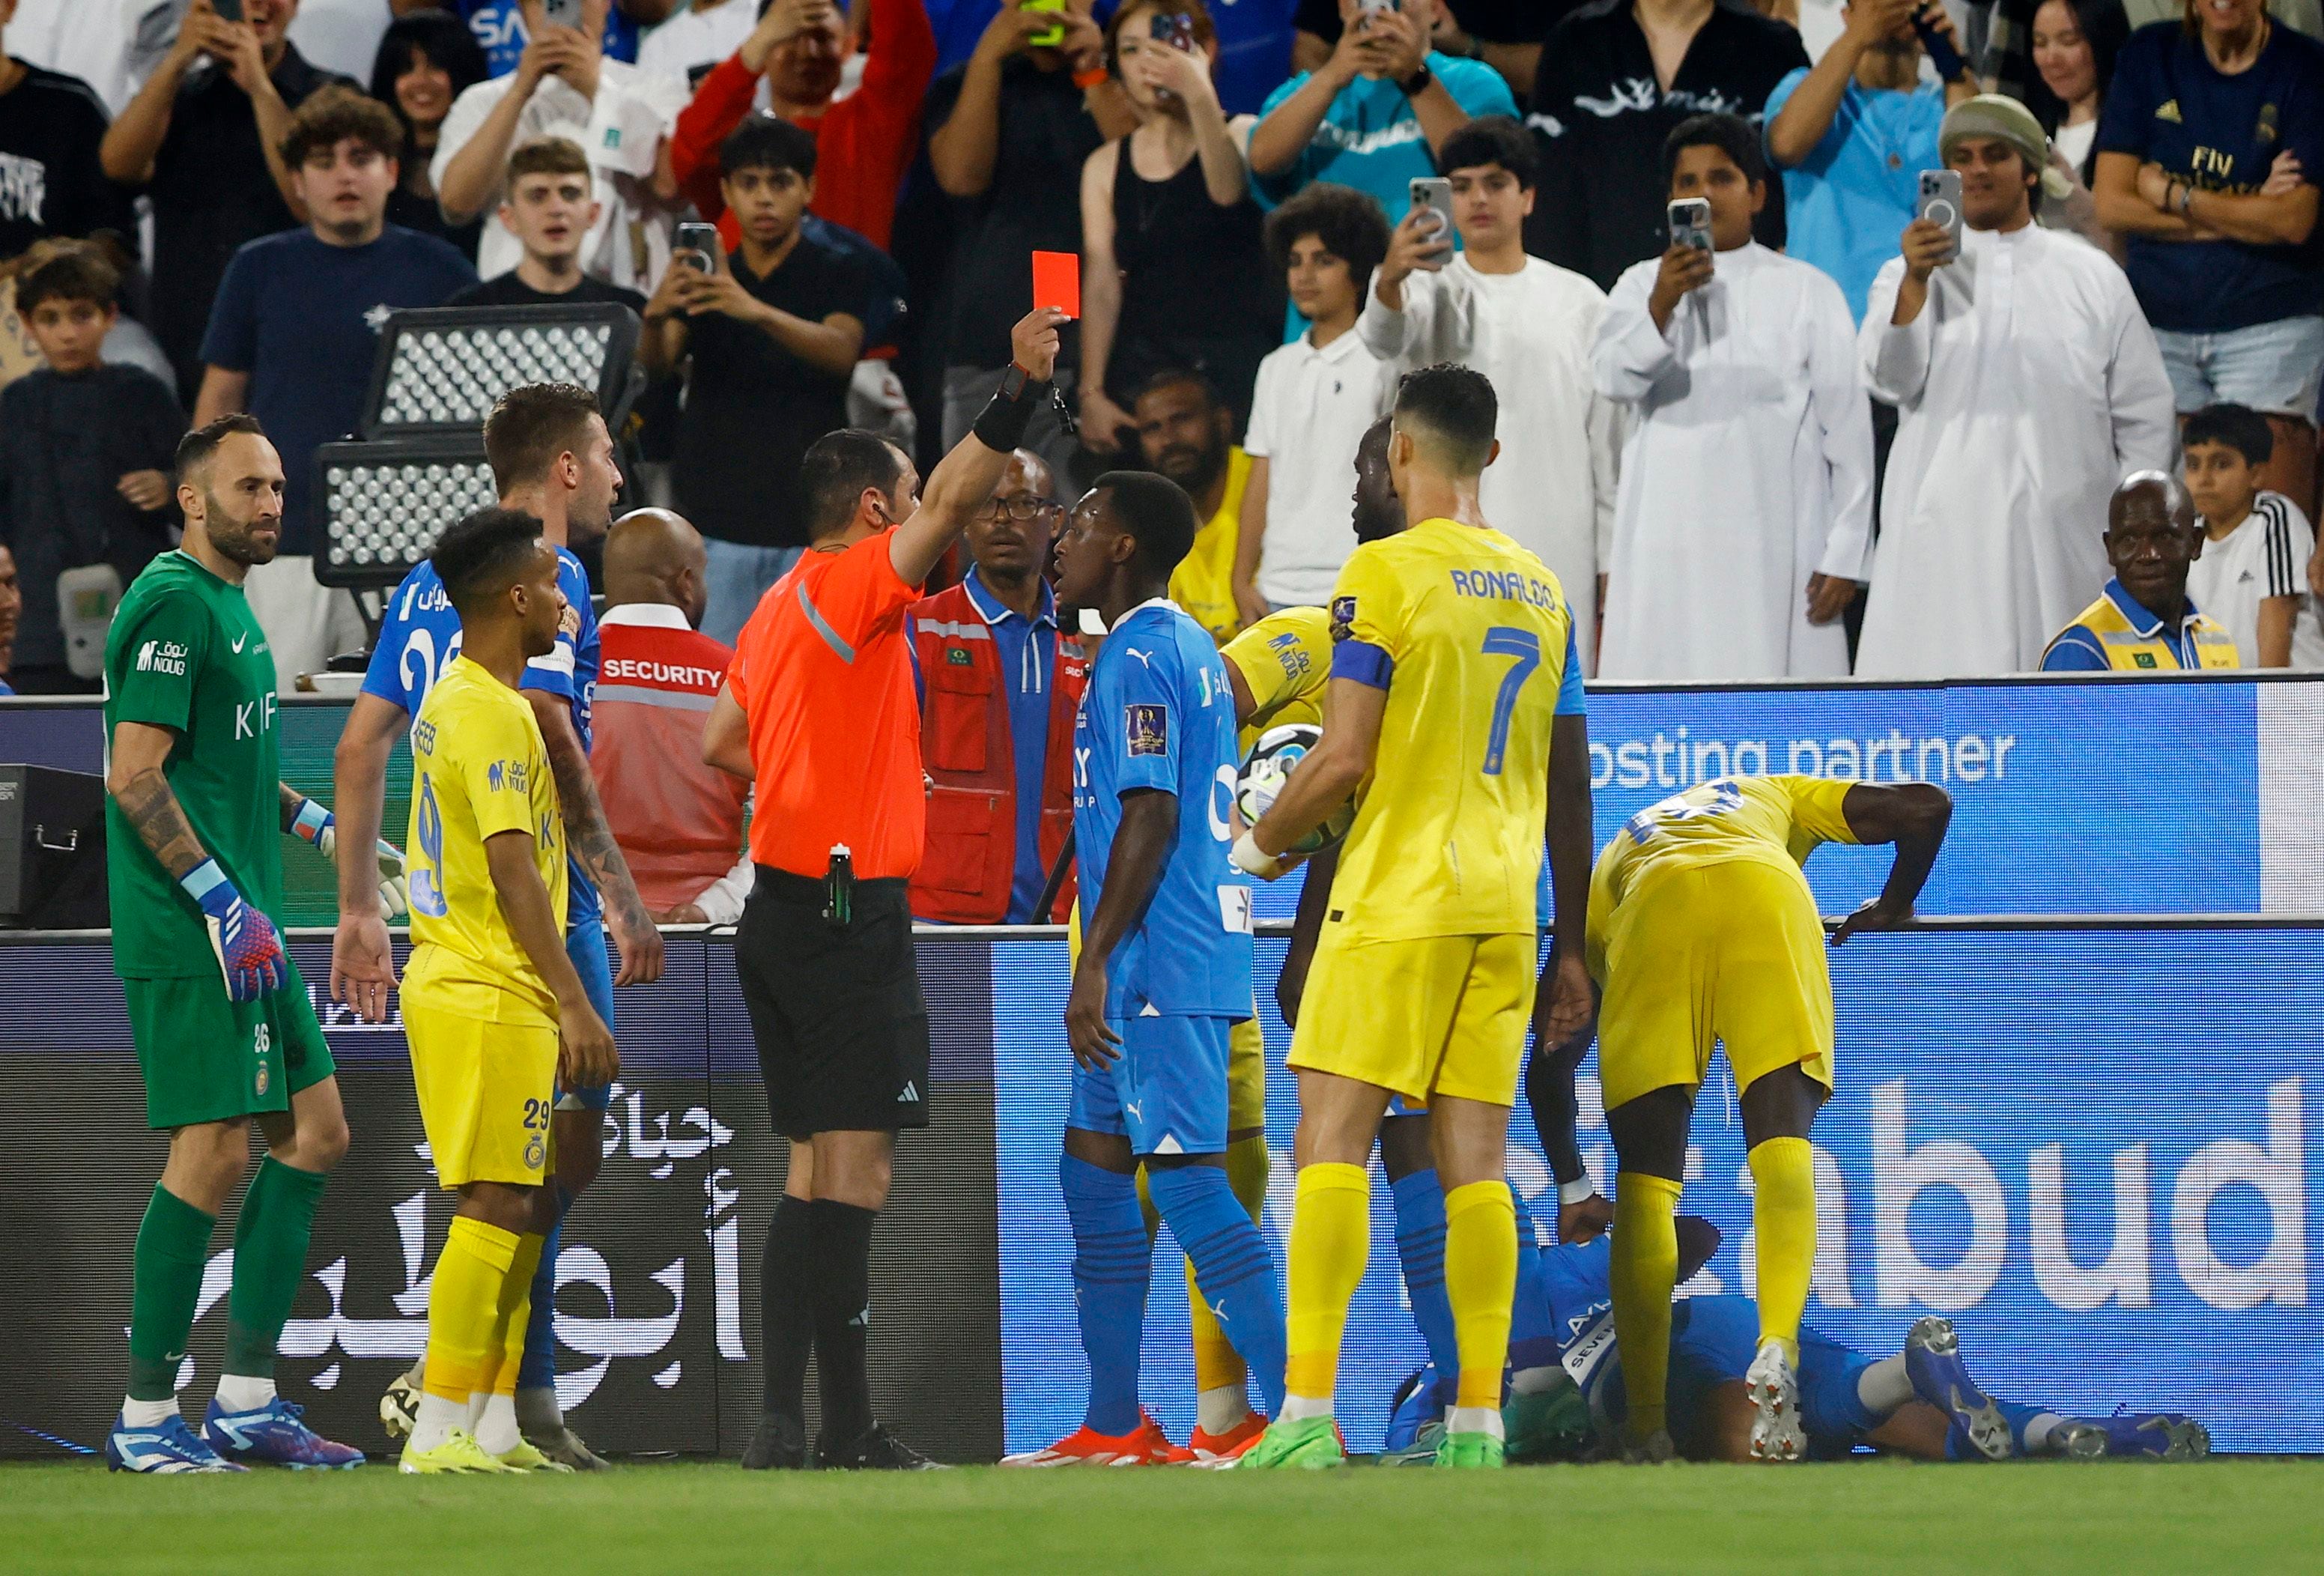 El momento en el que Cristiano Ronaldo recibe la roja. Una imagen que recorre el mundo (REUTERS/Rula Rouhana)